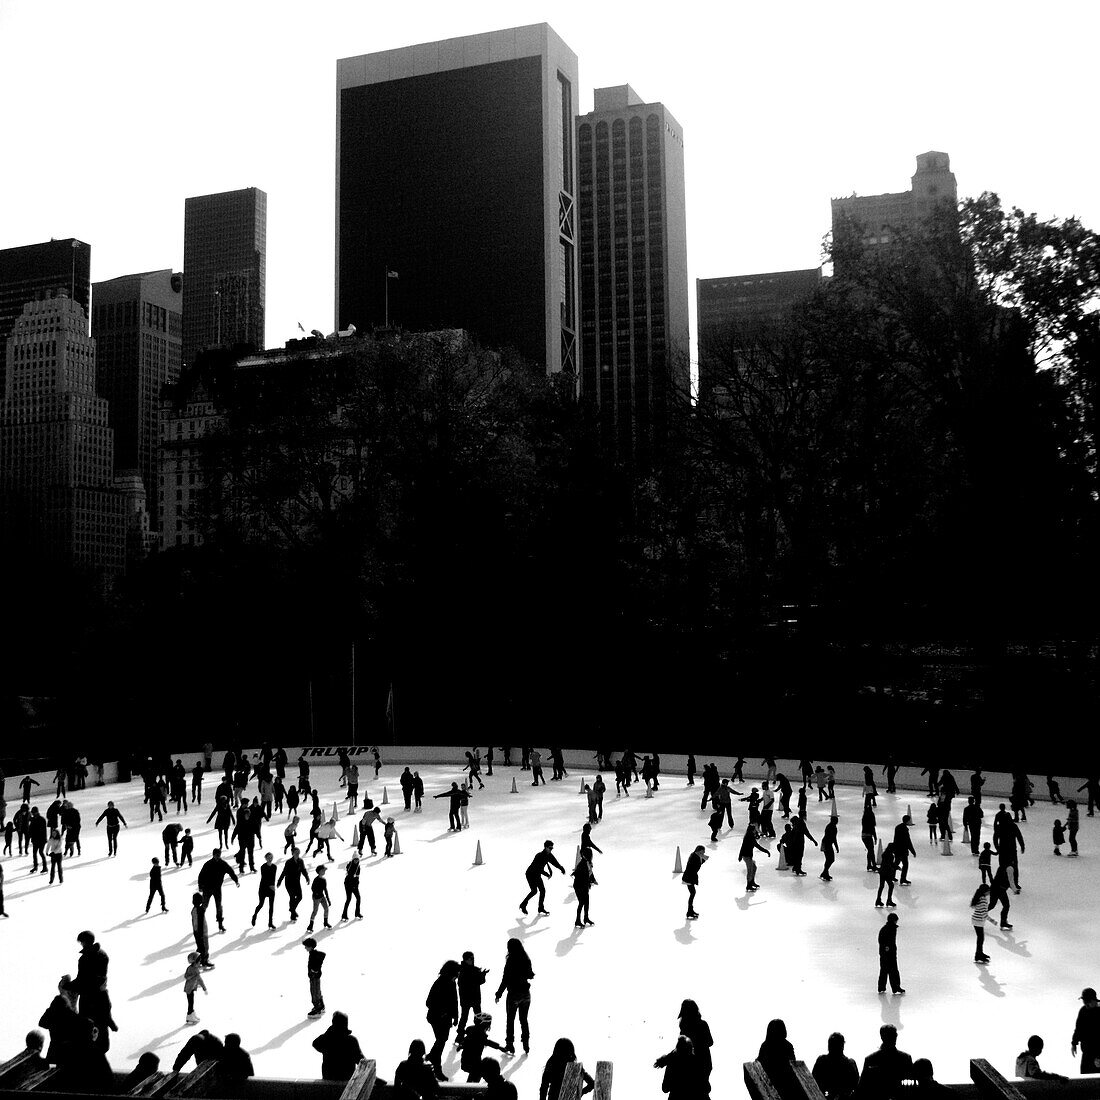 Ice skating in NYC., New York City, NY, USA